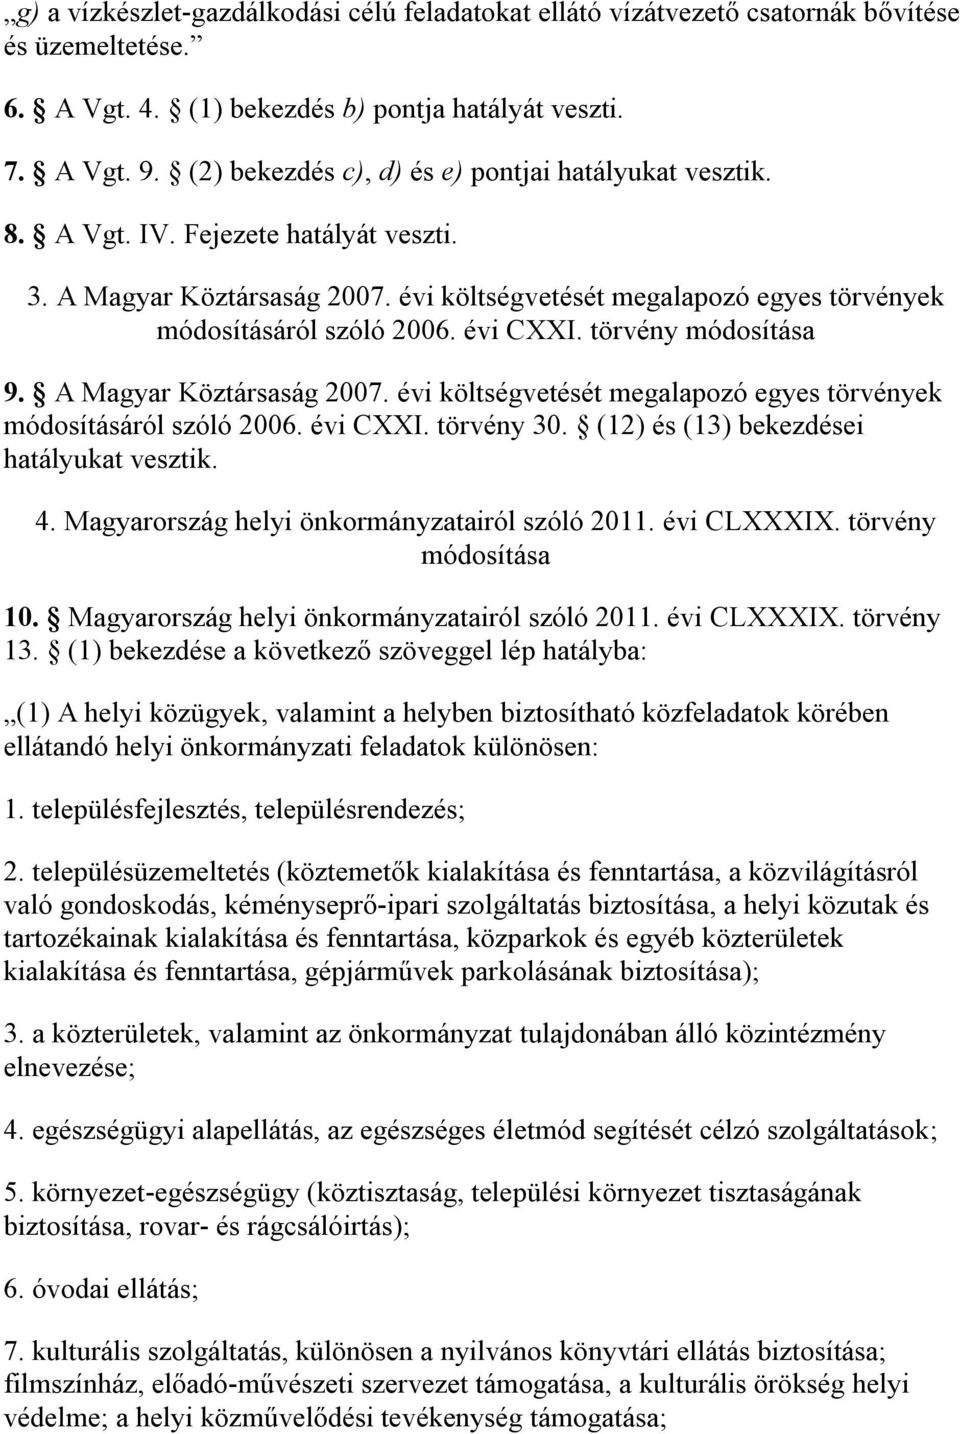 évi CXXI. törvény módosítása 9. A Magyar Köztársaság 2007. évi költségvetését megalapozó egyes törvények módosításáról szóló 2006. évi CXXI. törvény 30. (12) és (13) bekezdései hatályukat vesztik. 4.